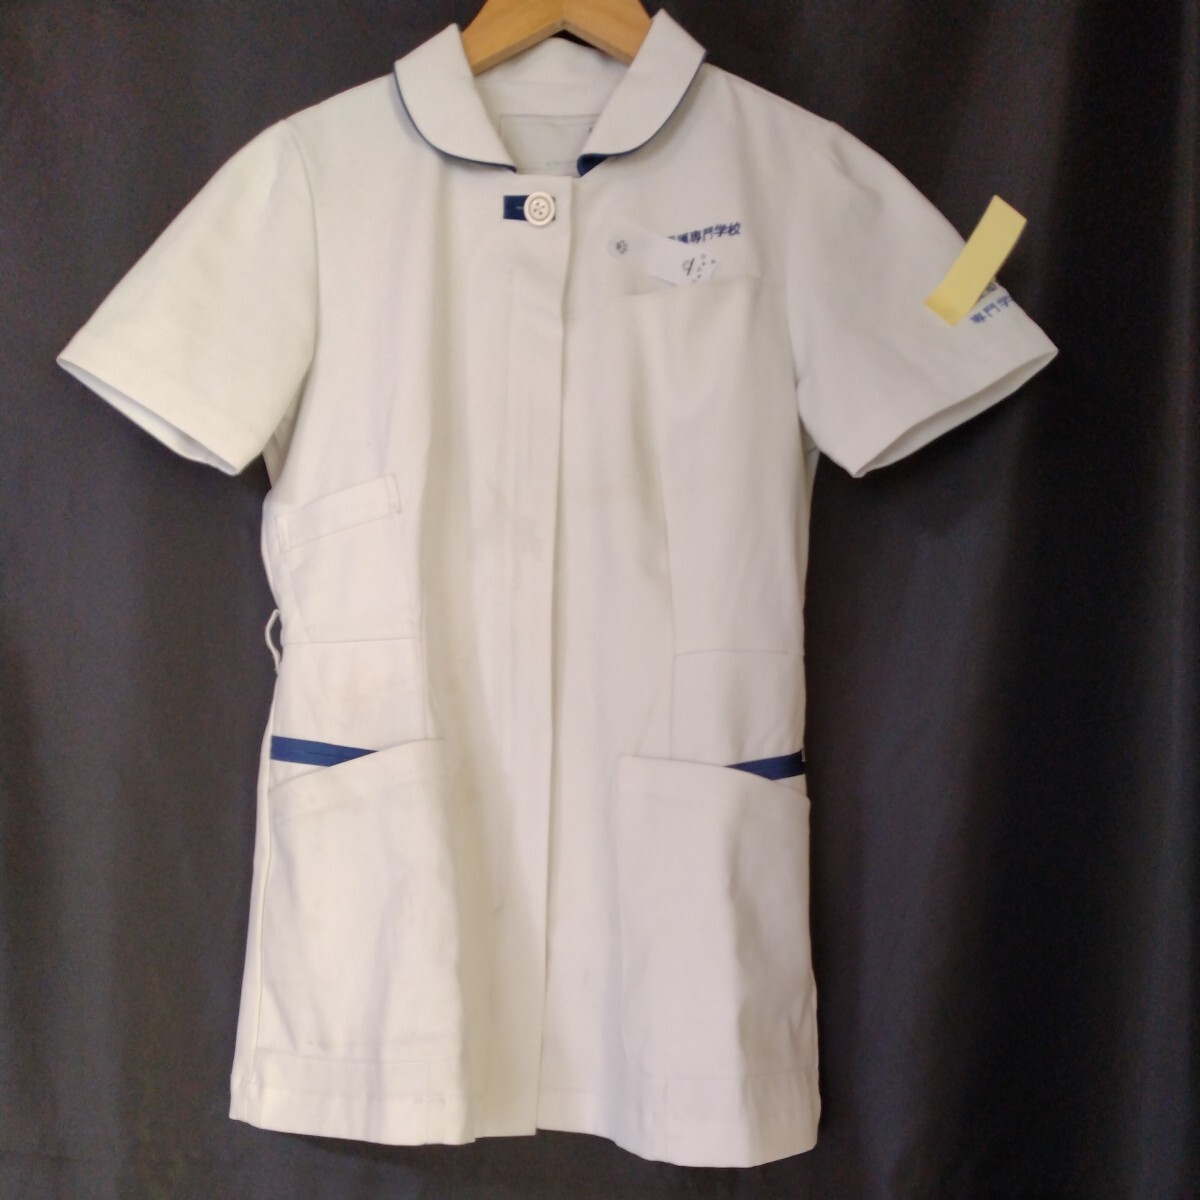 nagaire- Ben FT4552② размер M короткий рукав одежда для медсестер форма медсестры белый / королевский синий медицинская помощь белый халат форма костюм уход 